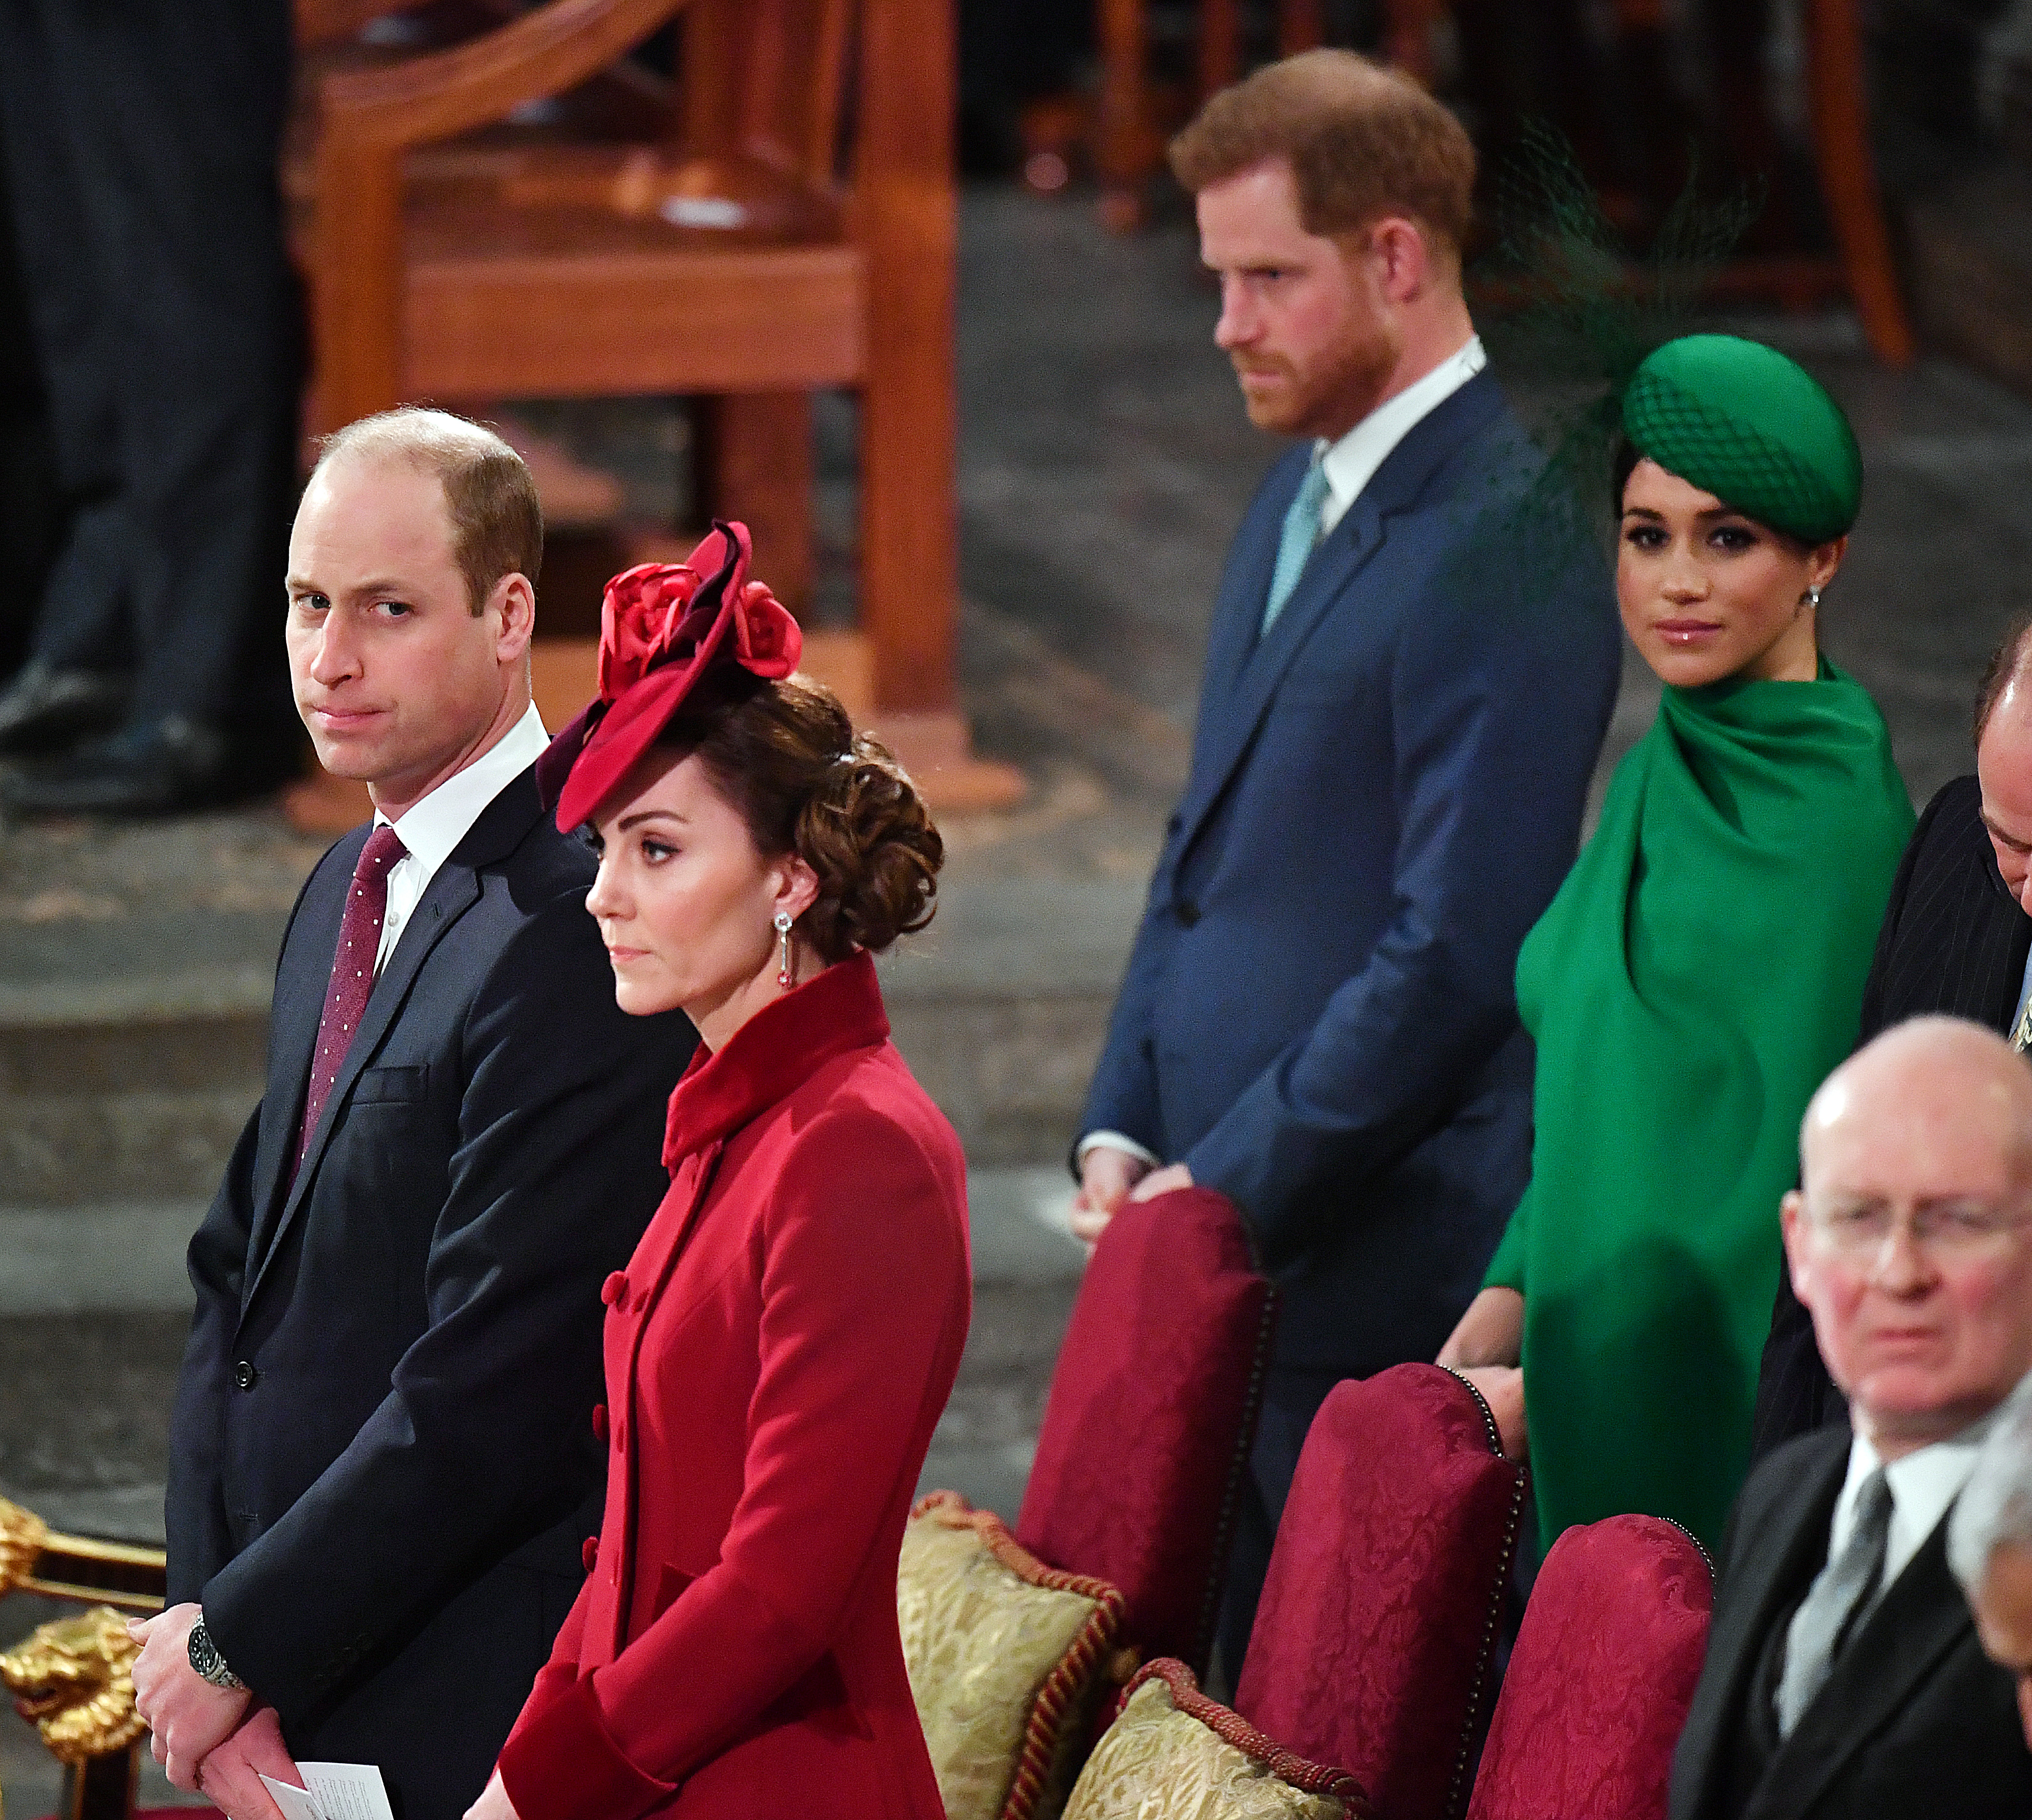 El príncipe William, la princesa Catharine, el príncipe Harry y Meghan Markle durante el Servicio del Día de la Commonwealth 2020 el 9 de marzo de 2020 en Londres, Inglaterra | Foto: Getty Images